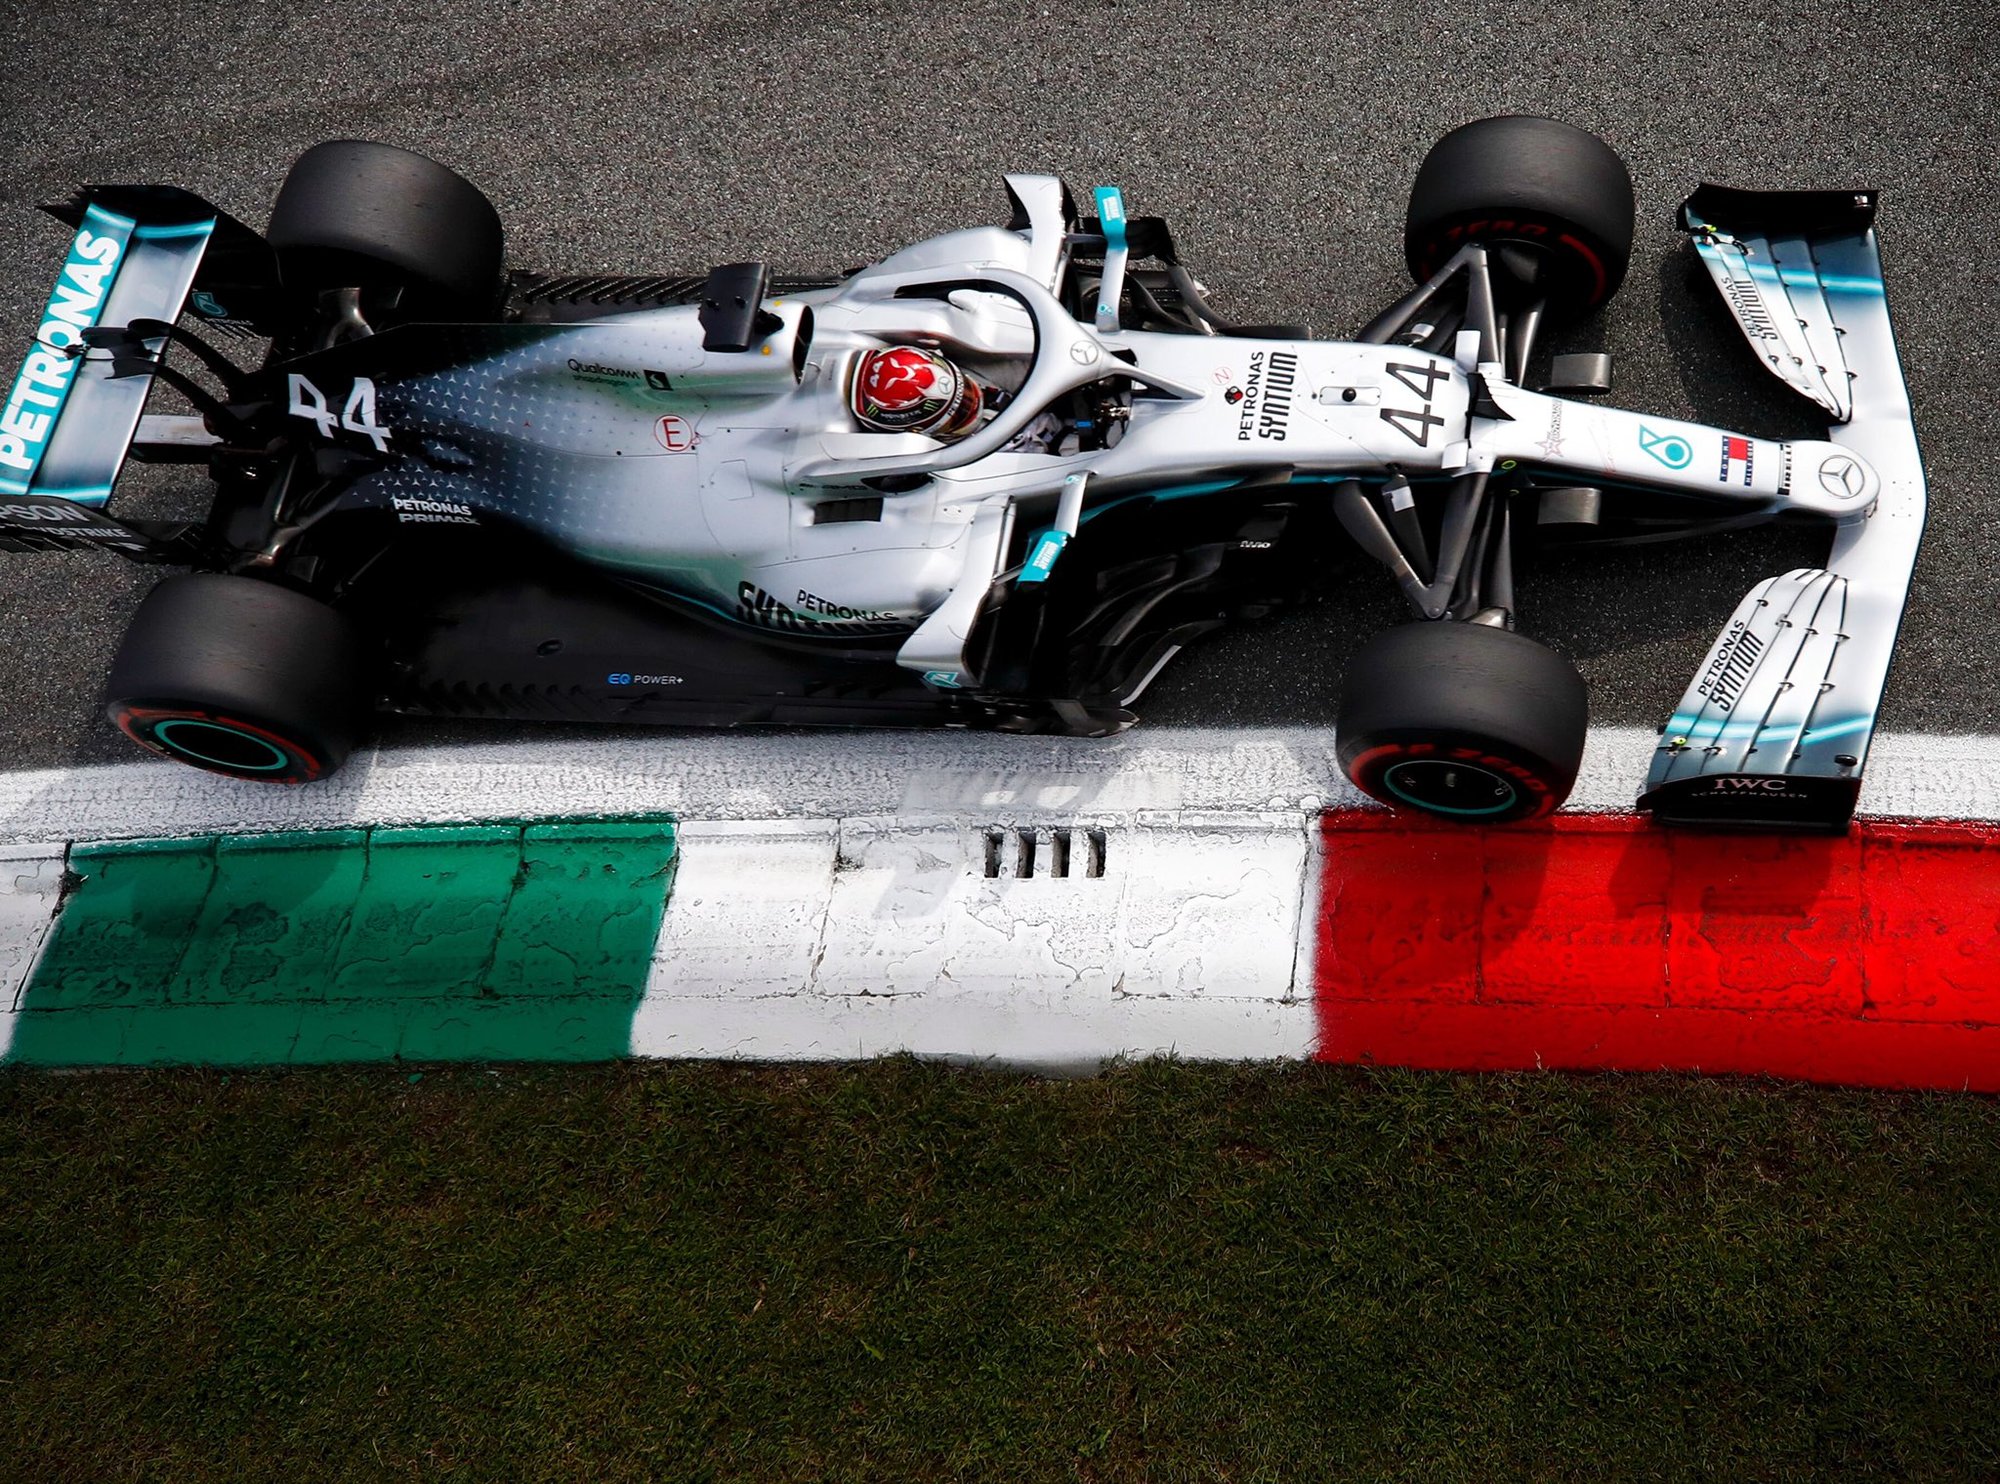 Lewisovi Hamiltonovi s Mercedesem nakonec na pole-position moc nescházelo